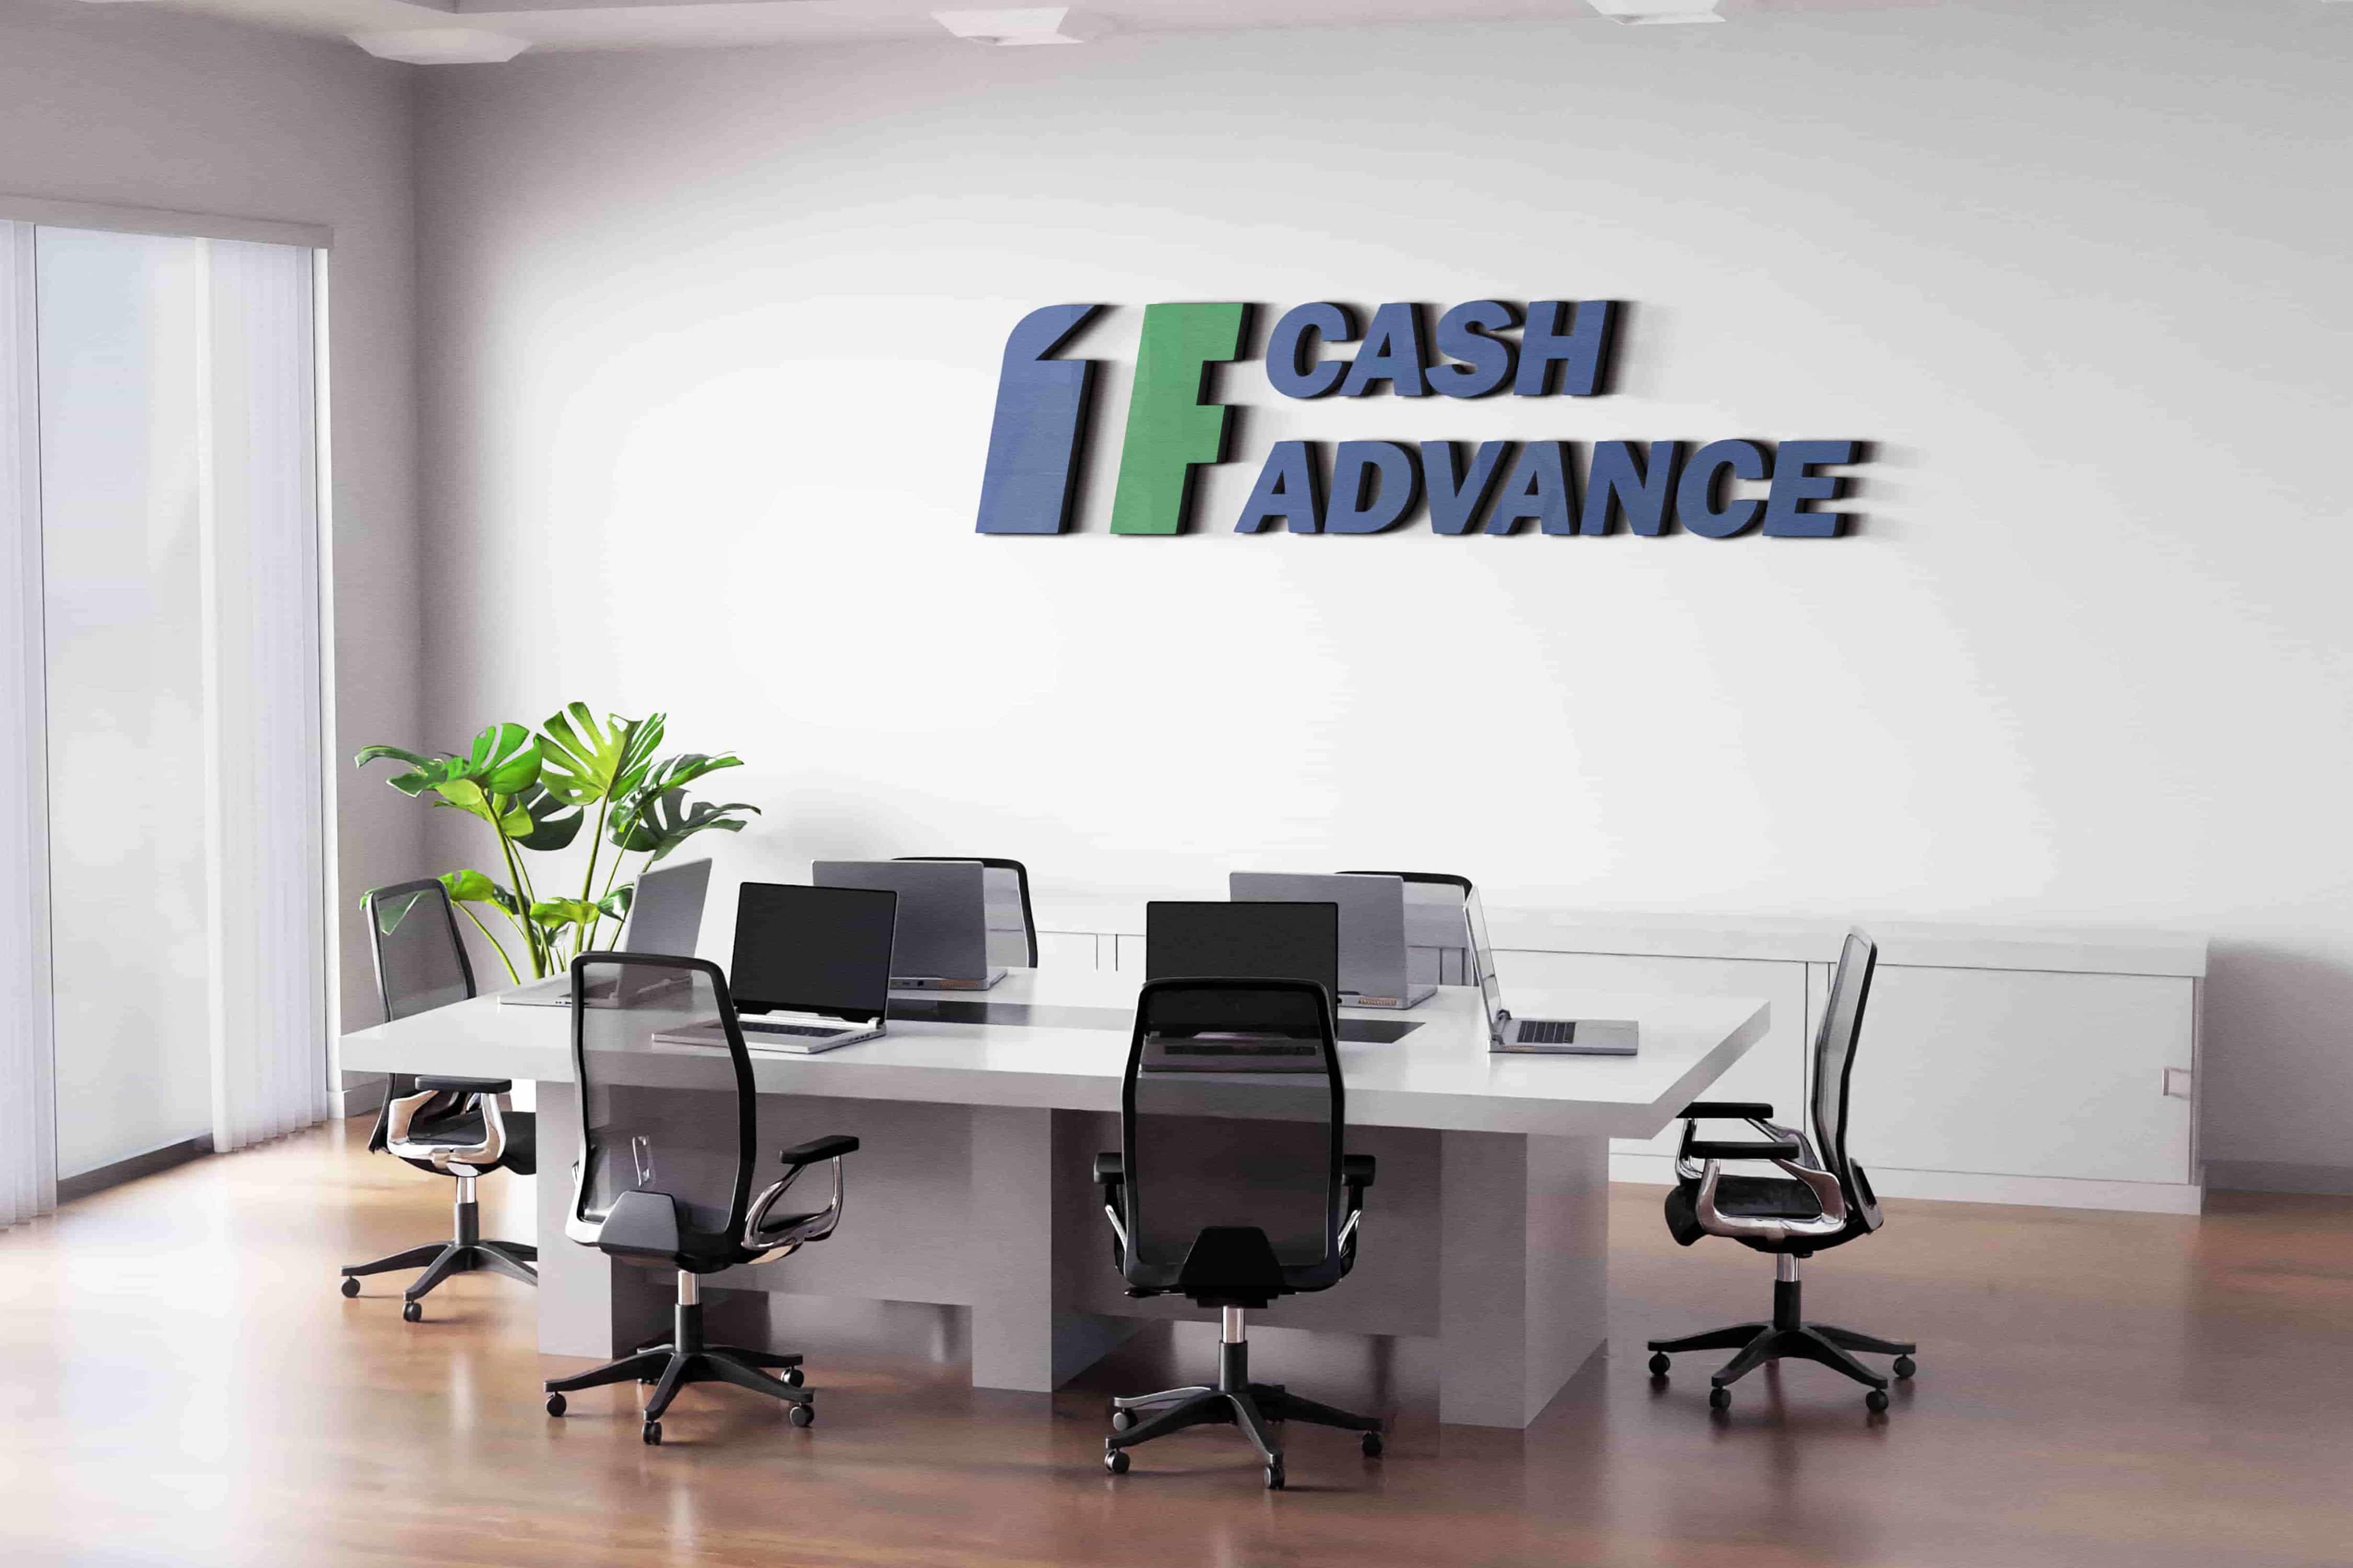 1F Cash Advance payday loans Michigan